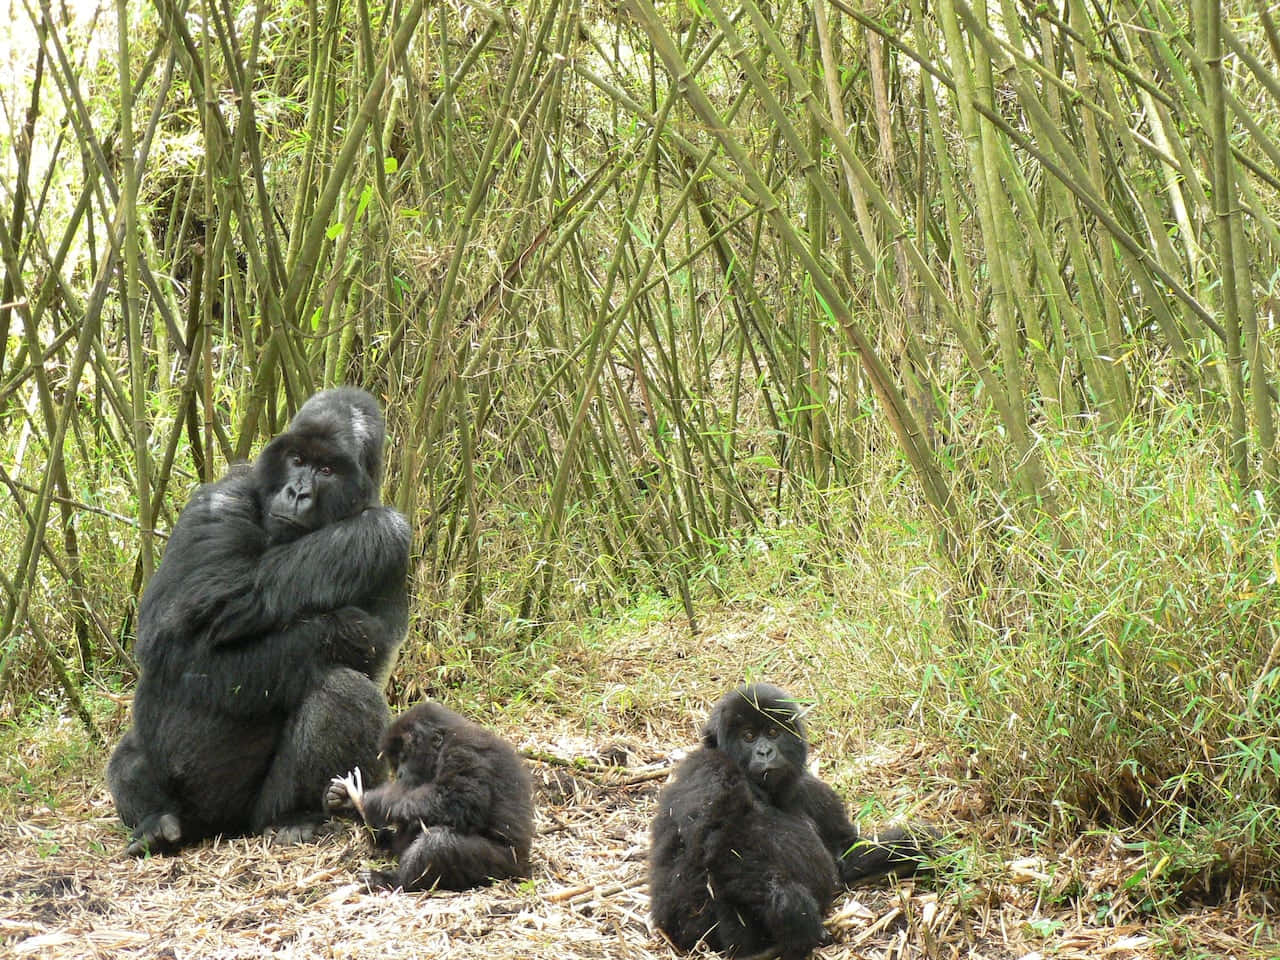 Unmaestoso Gorilla Dalle Spalle Nere Riposa Pacificamente Nel Suo Habitat Naturale